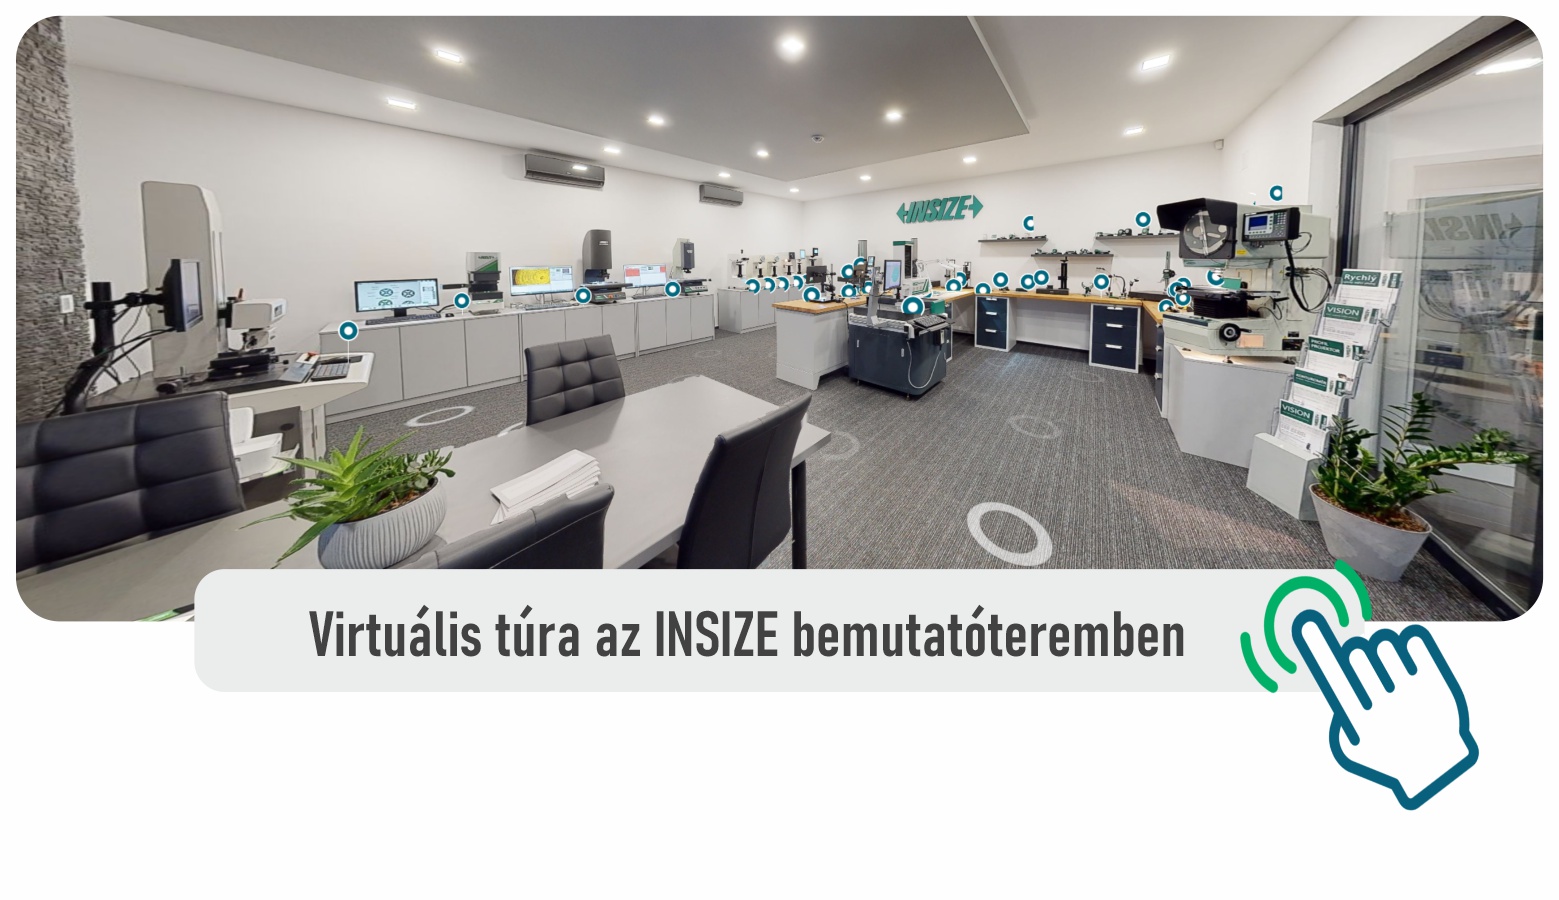 Virtuális túra az INSIZE bemutatóteremben insz.hu